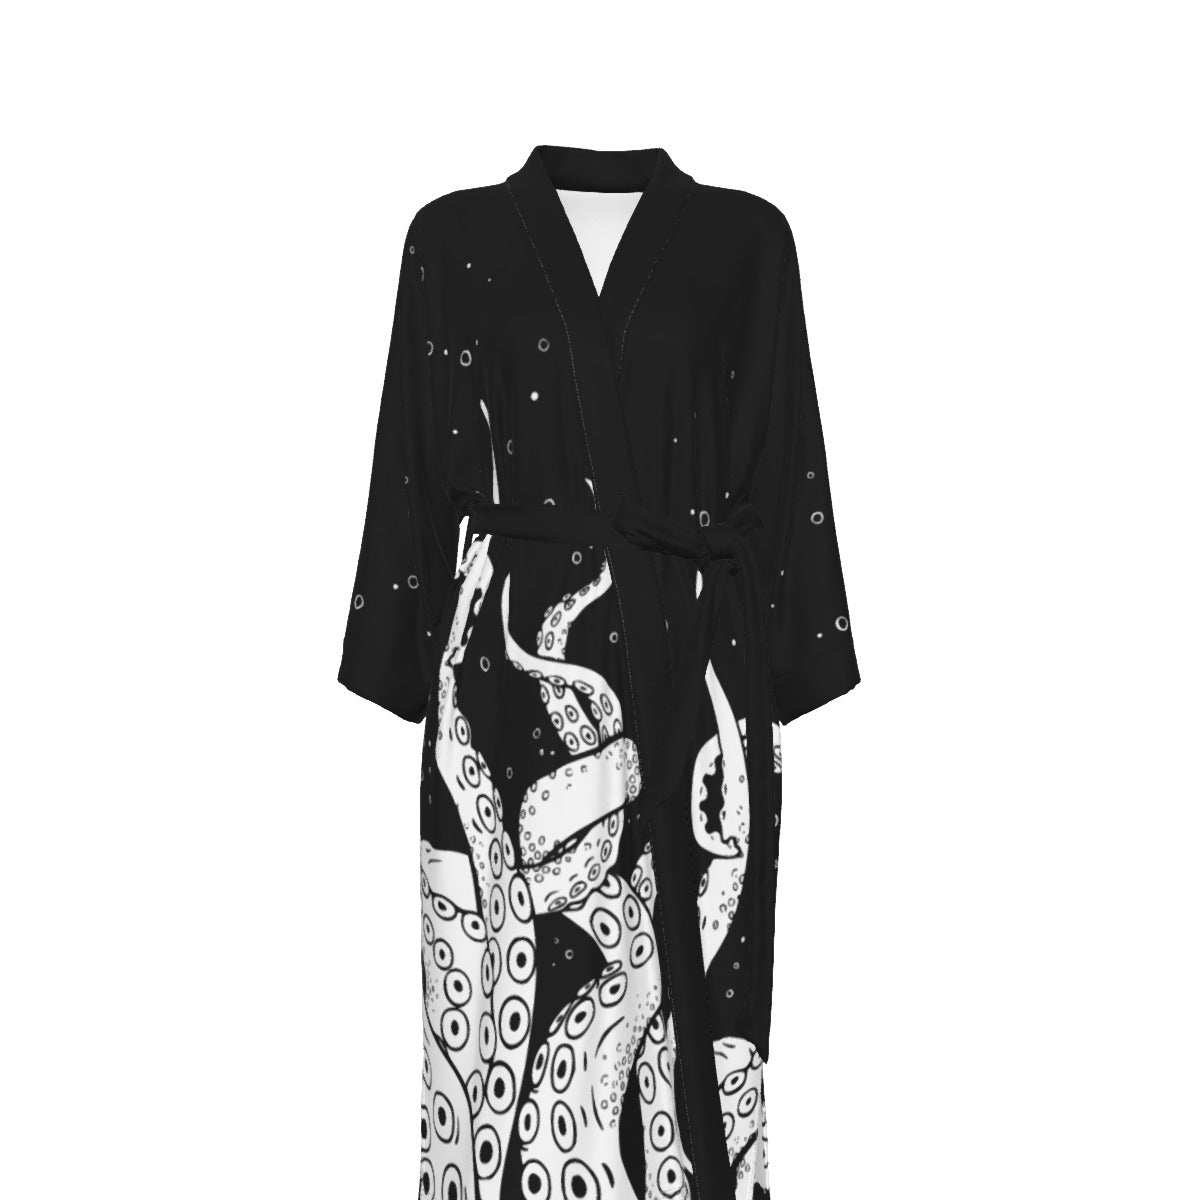 Kraken Women's Satin Kimono Robe